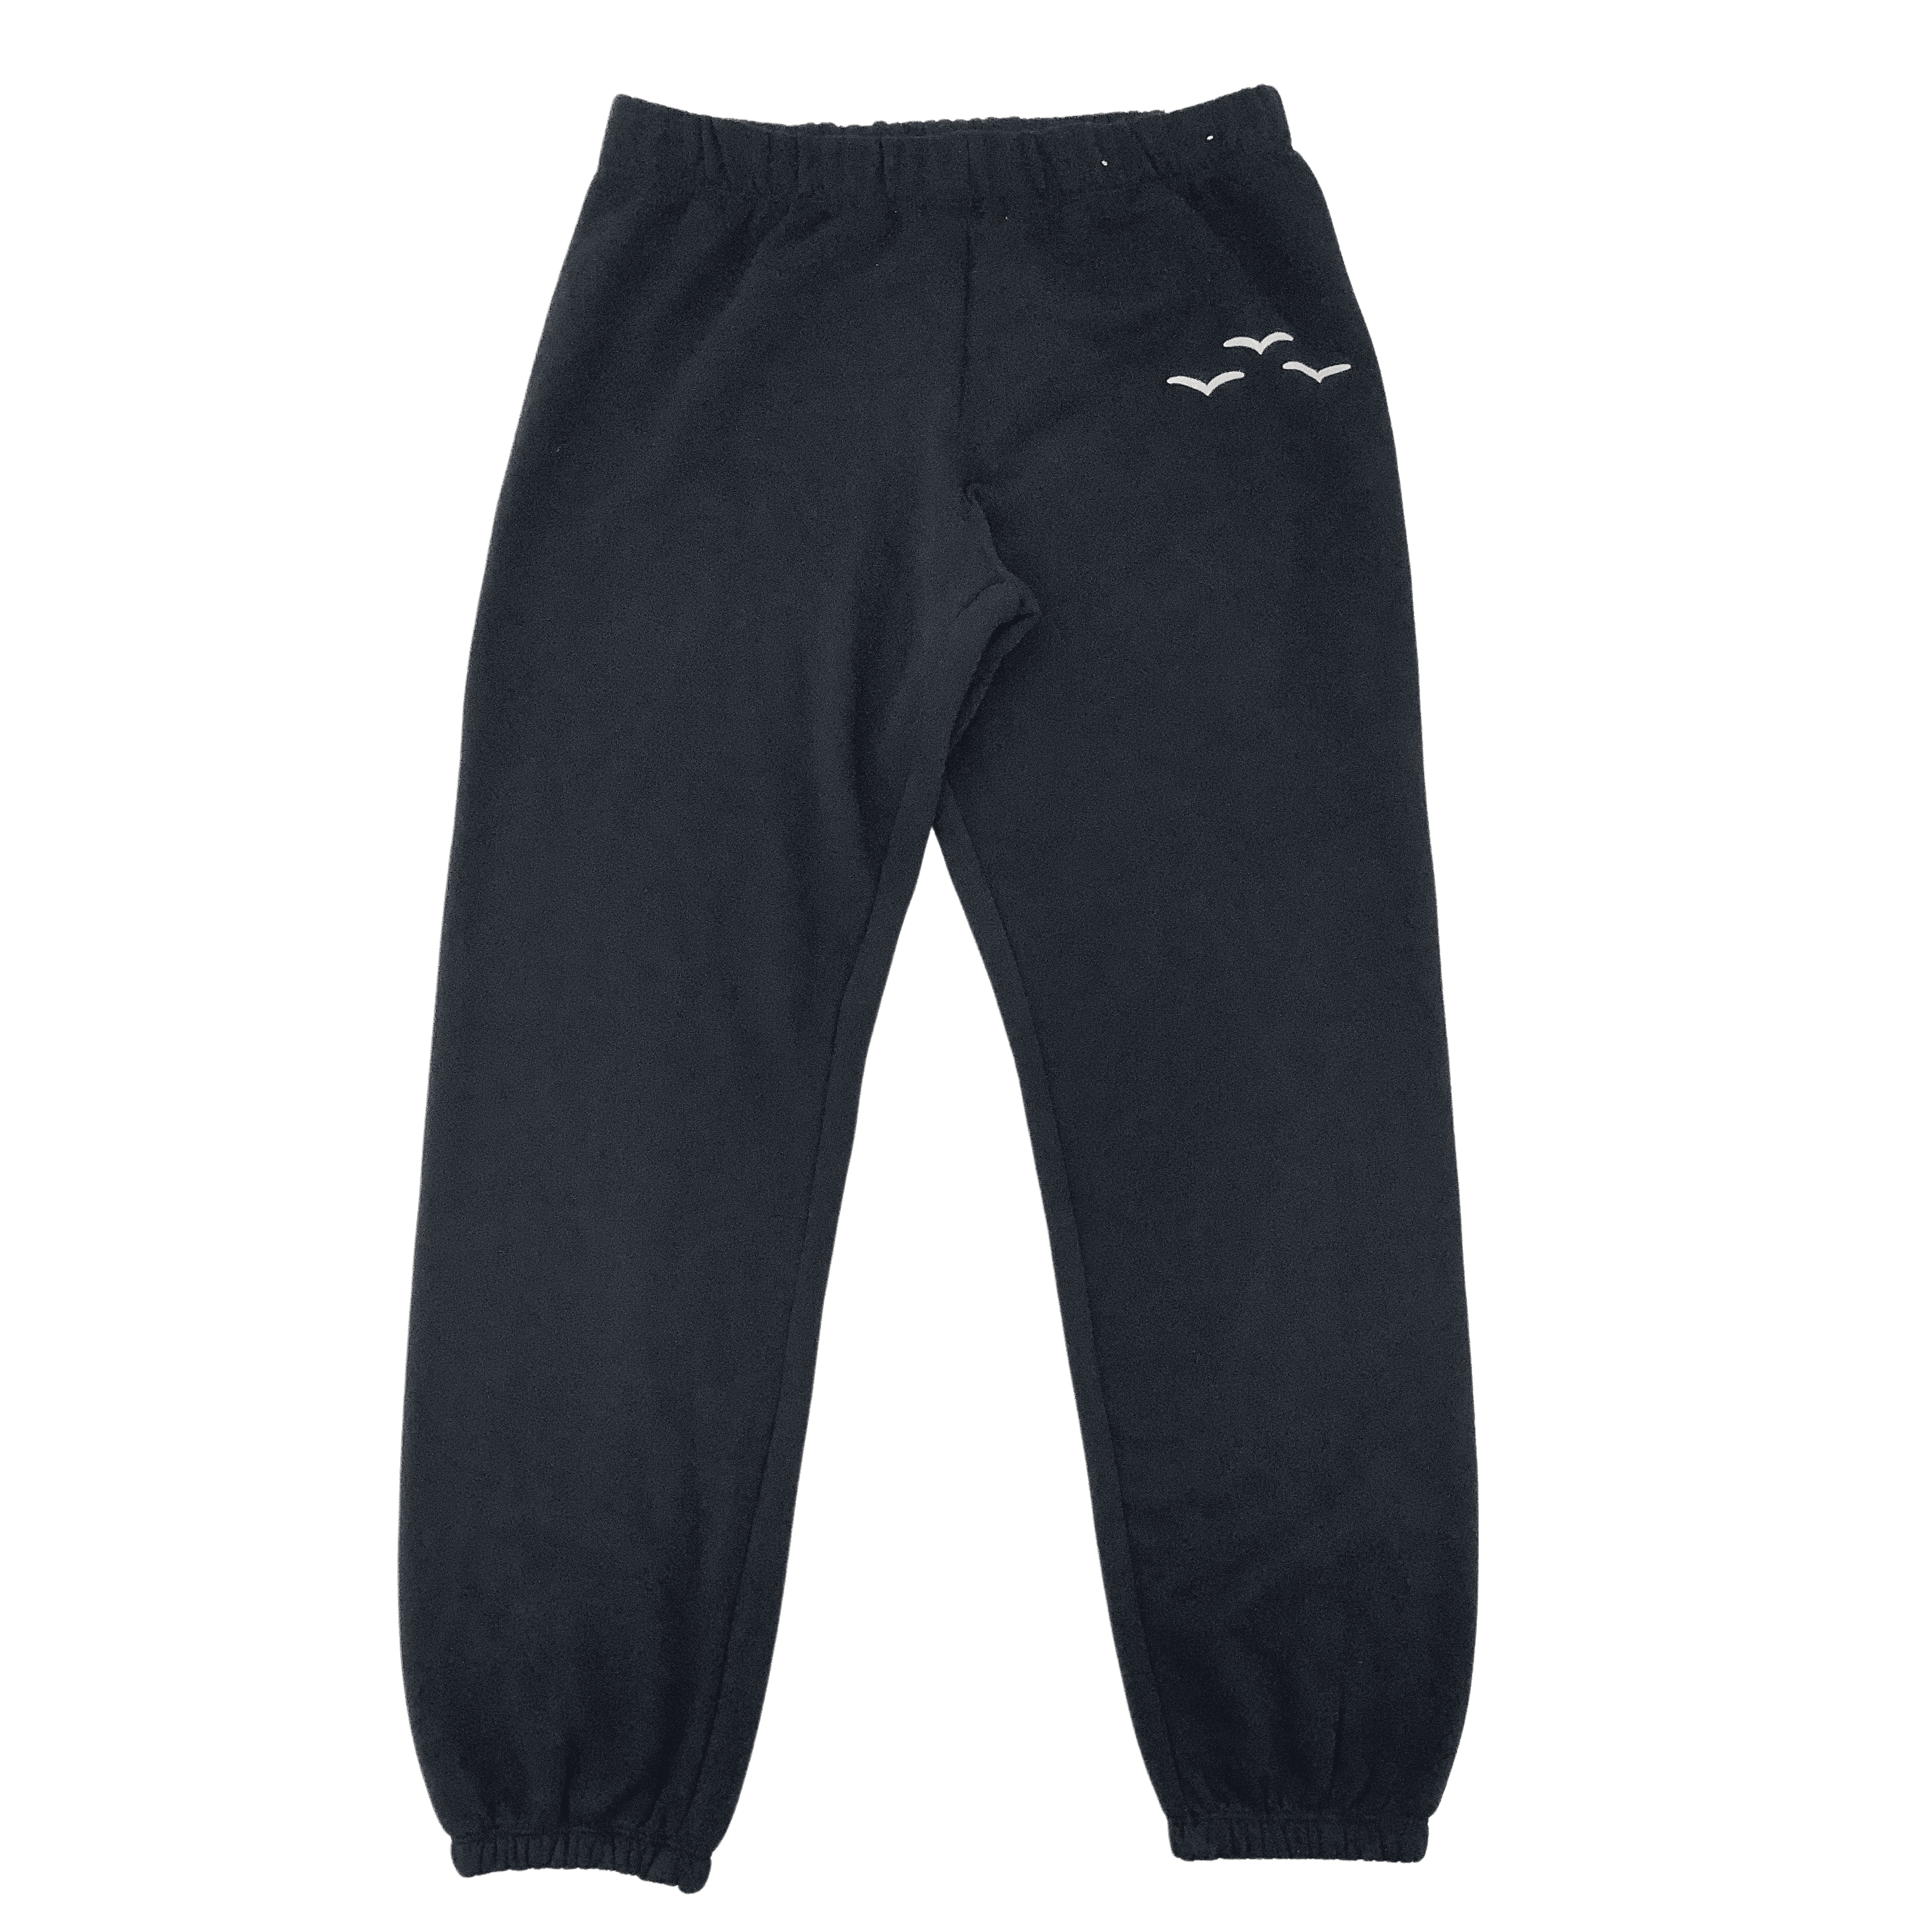 Lazy Pants Women's Sweatpants / Black / Women's Joggers / Various Sizes